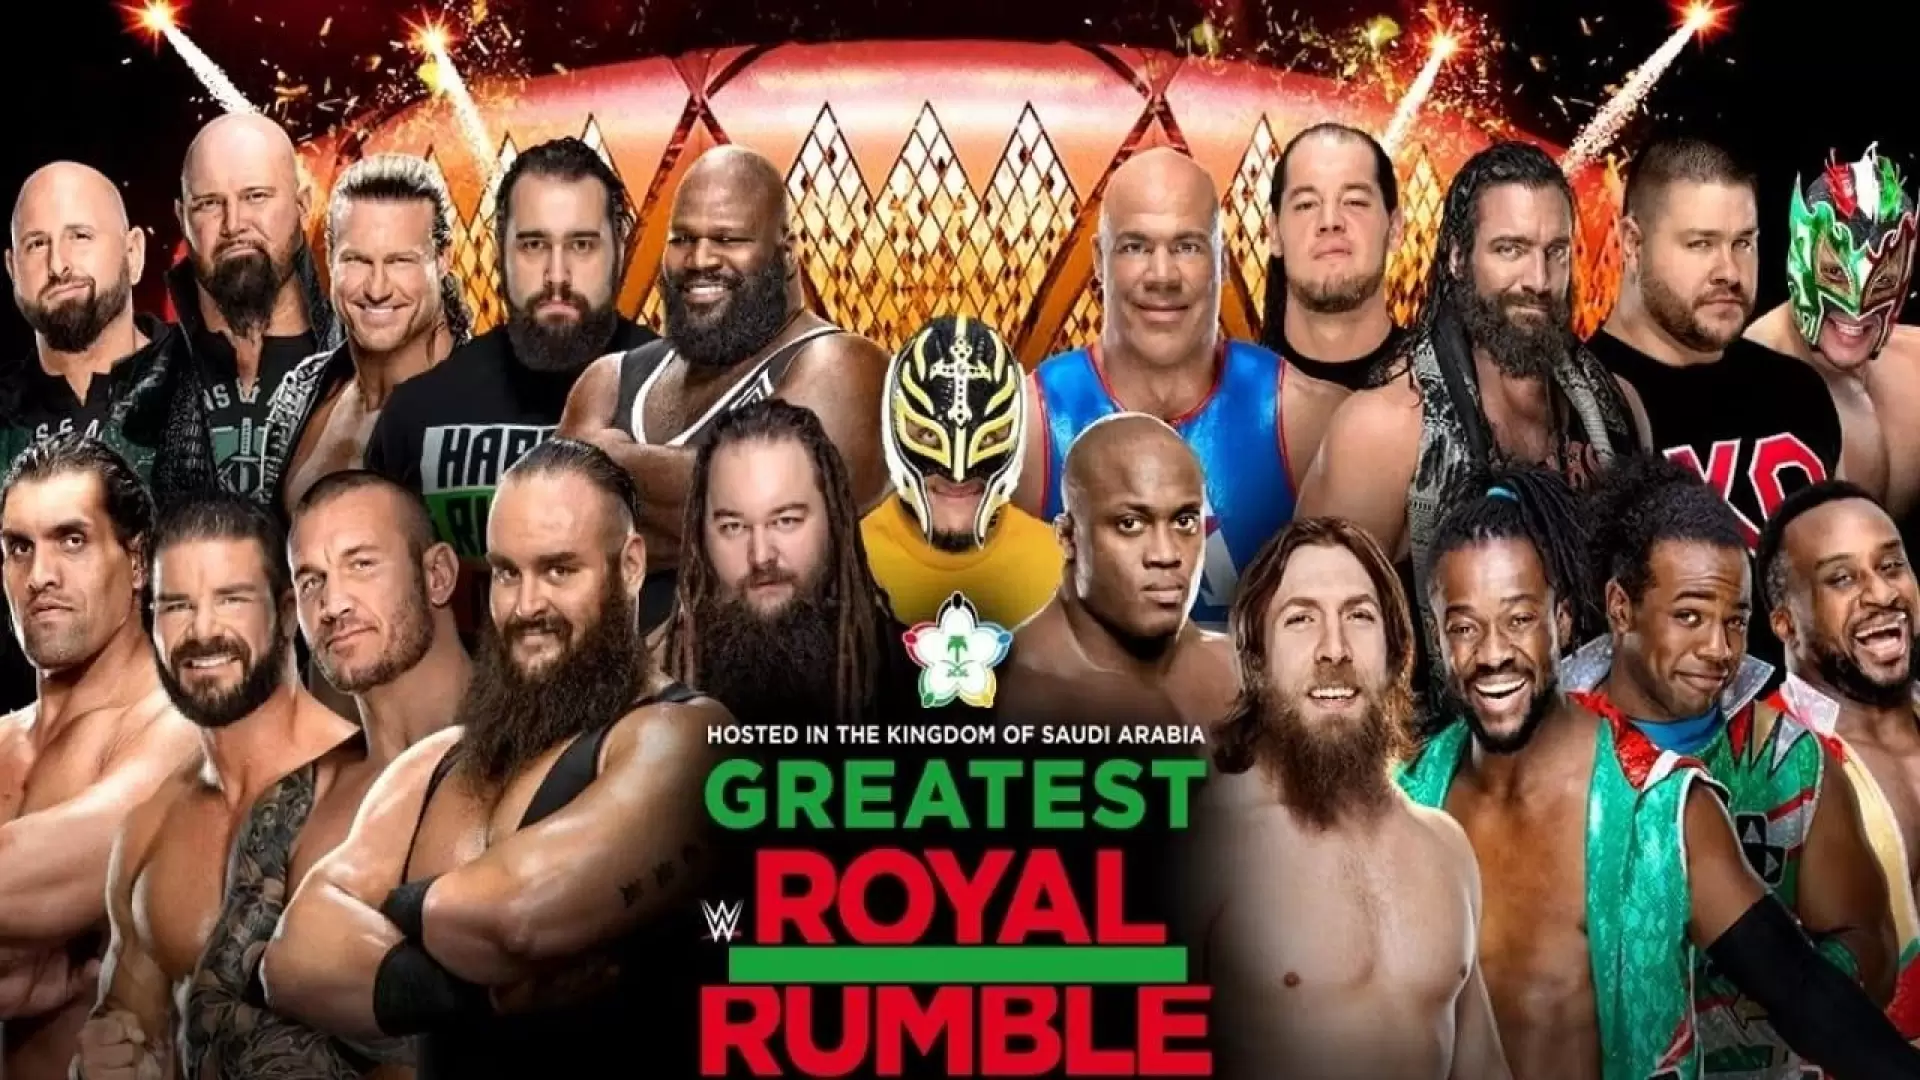 دانلود فیلم WWE Greatest Royal Rumble 2018 (بزرگترین رویال رامبل)